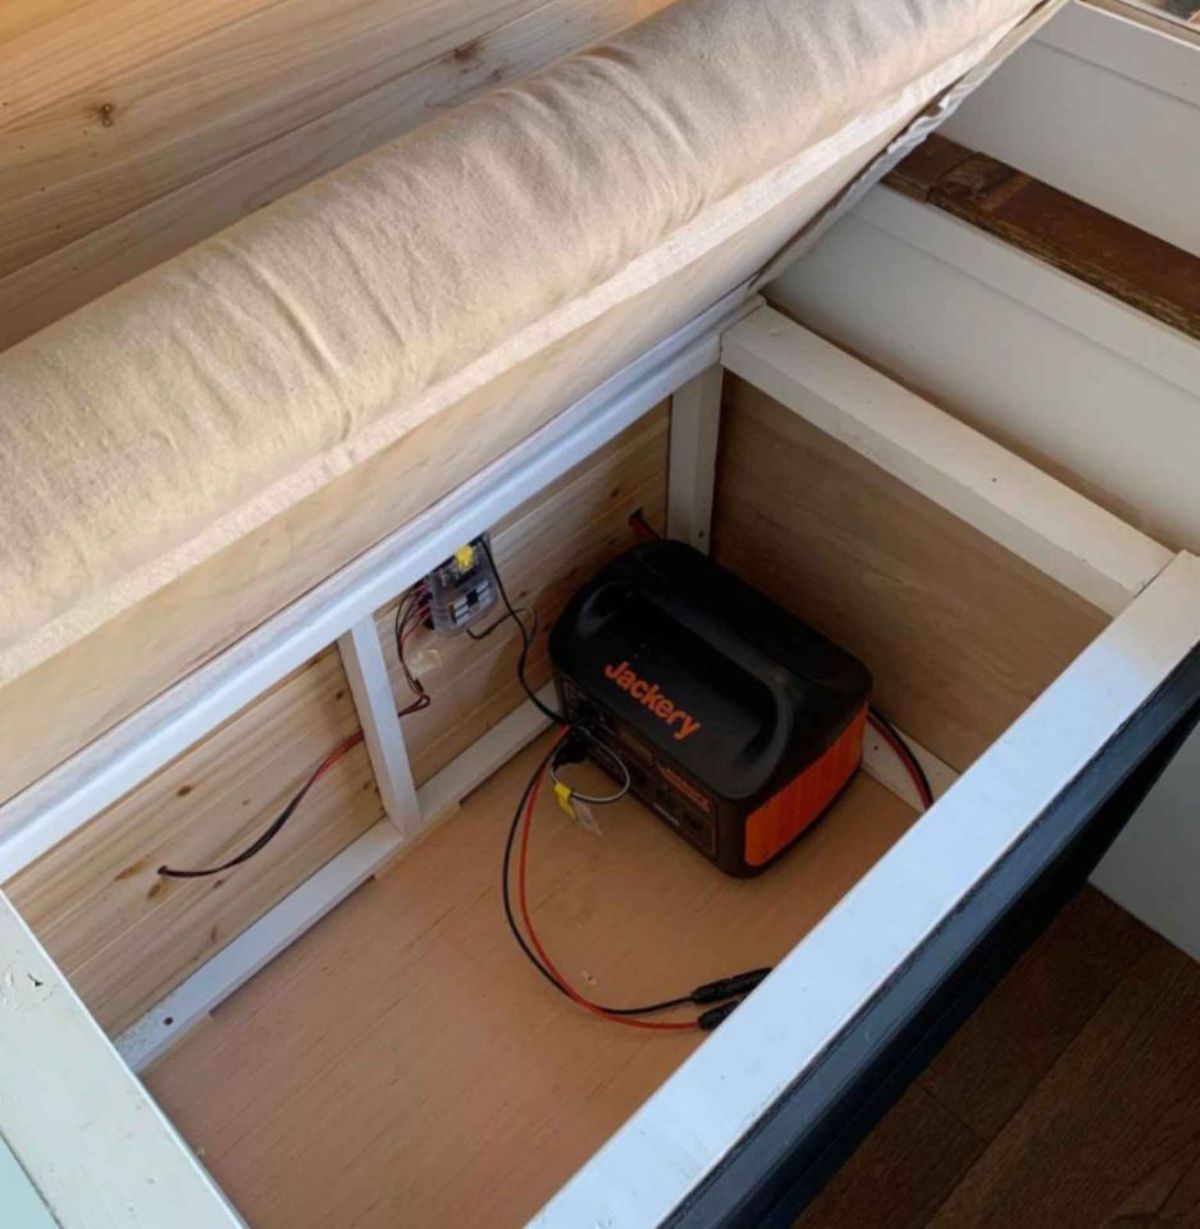 Storage under the bed